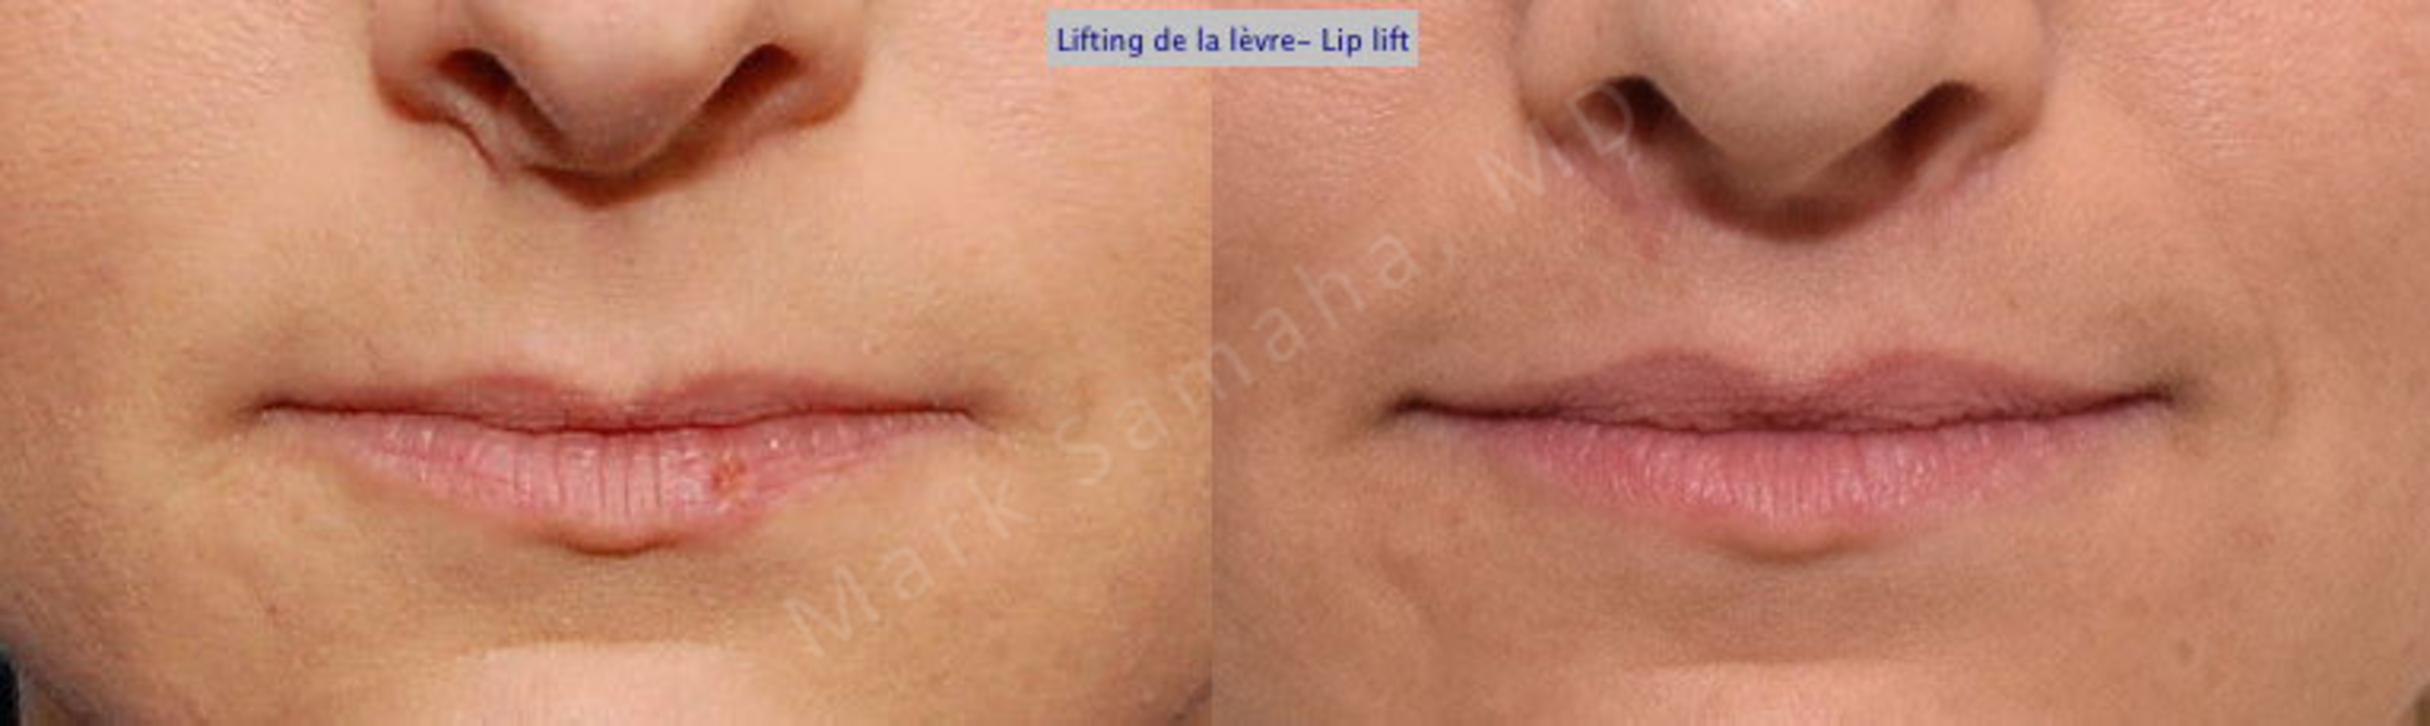 Before & After Lip Lift / Lifting de la lèvre supérieure Case 25 View #1 View in Mount Royal, QC